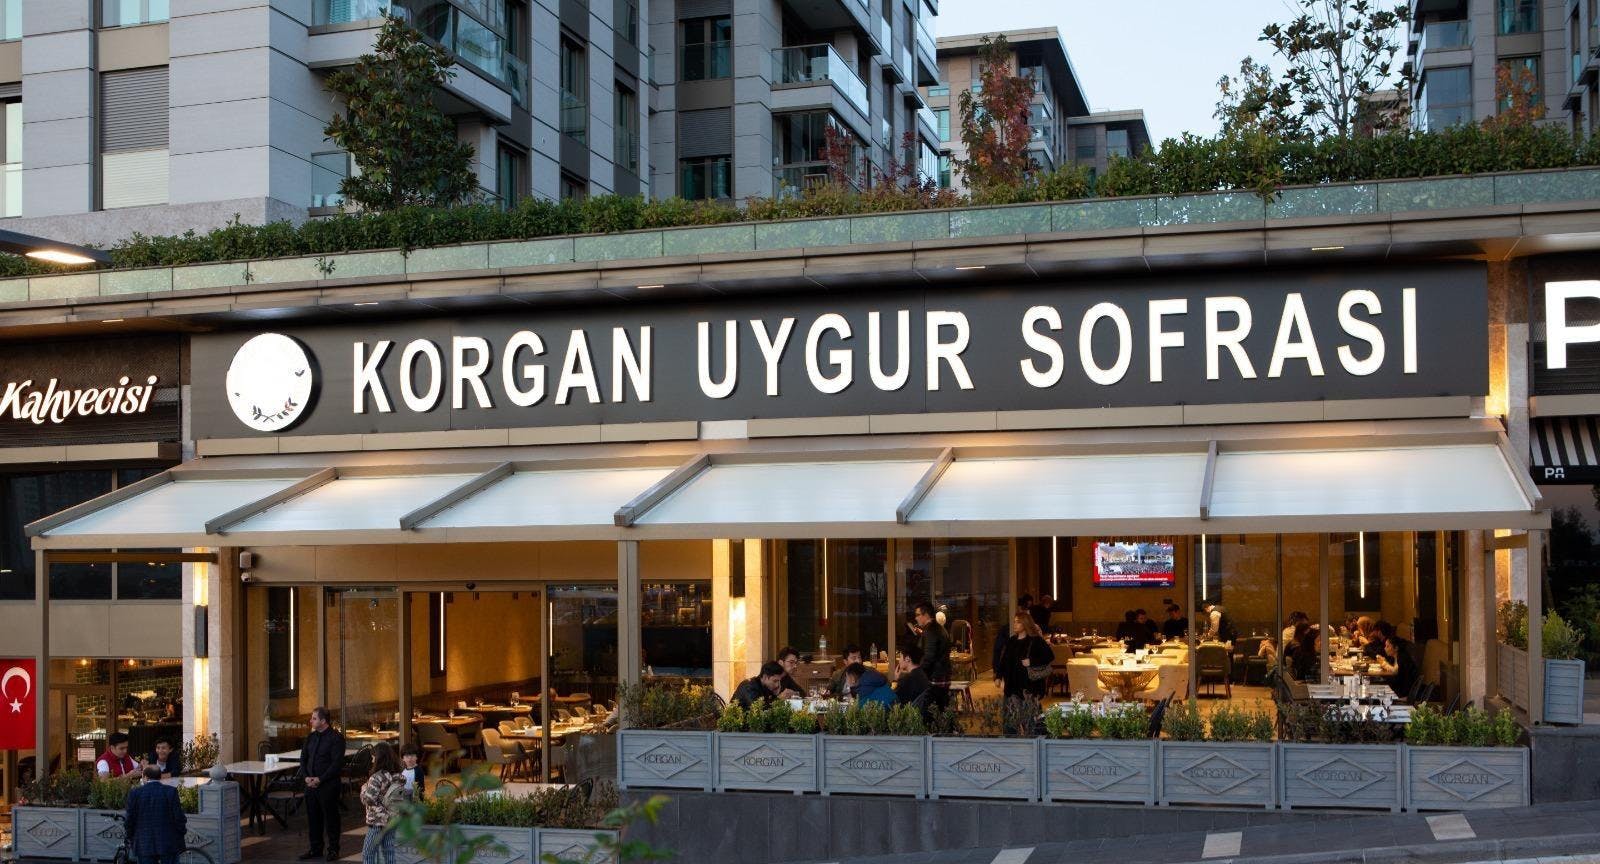 Photo of restaurant Korgan Uygur Sofrası in Zeytinburnu, Istanbul